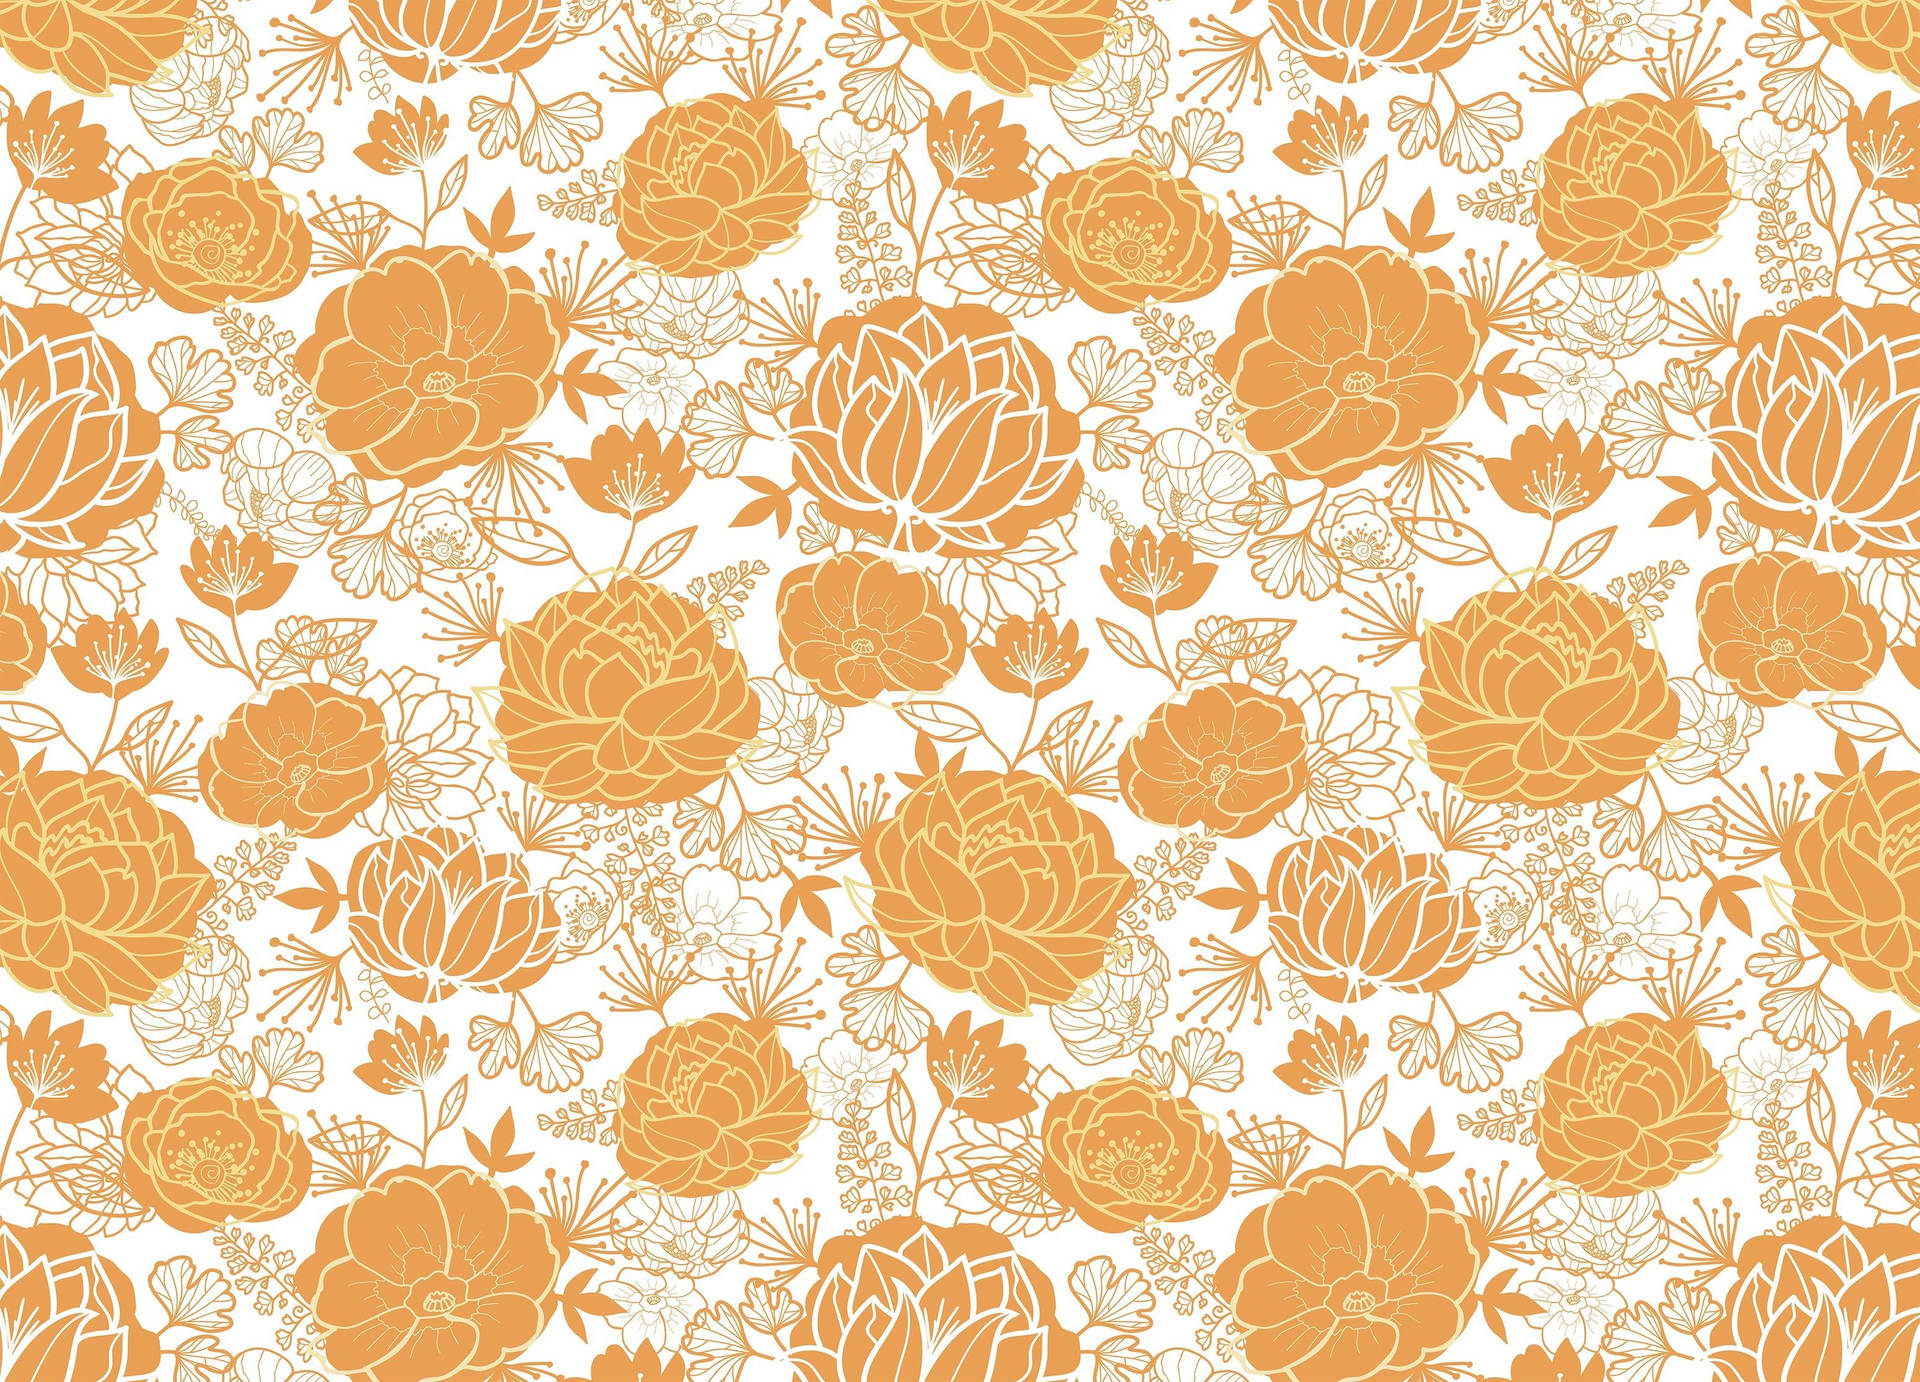 https://wallpapers.com/images/hd/orange-floral-7foljh8gn9s8vn0c.jpg